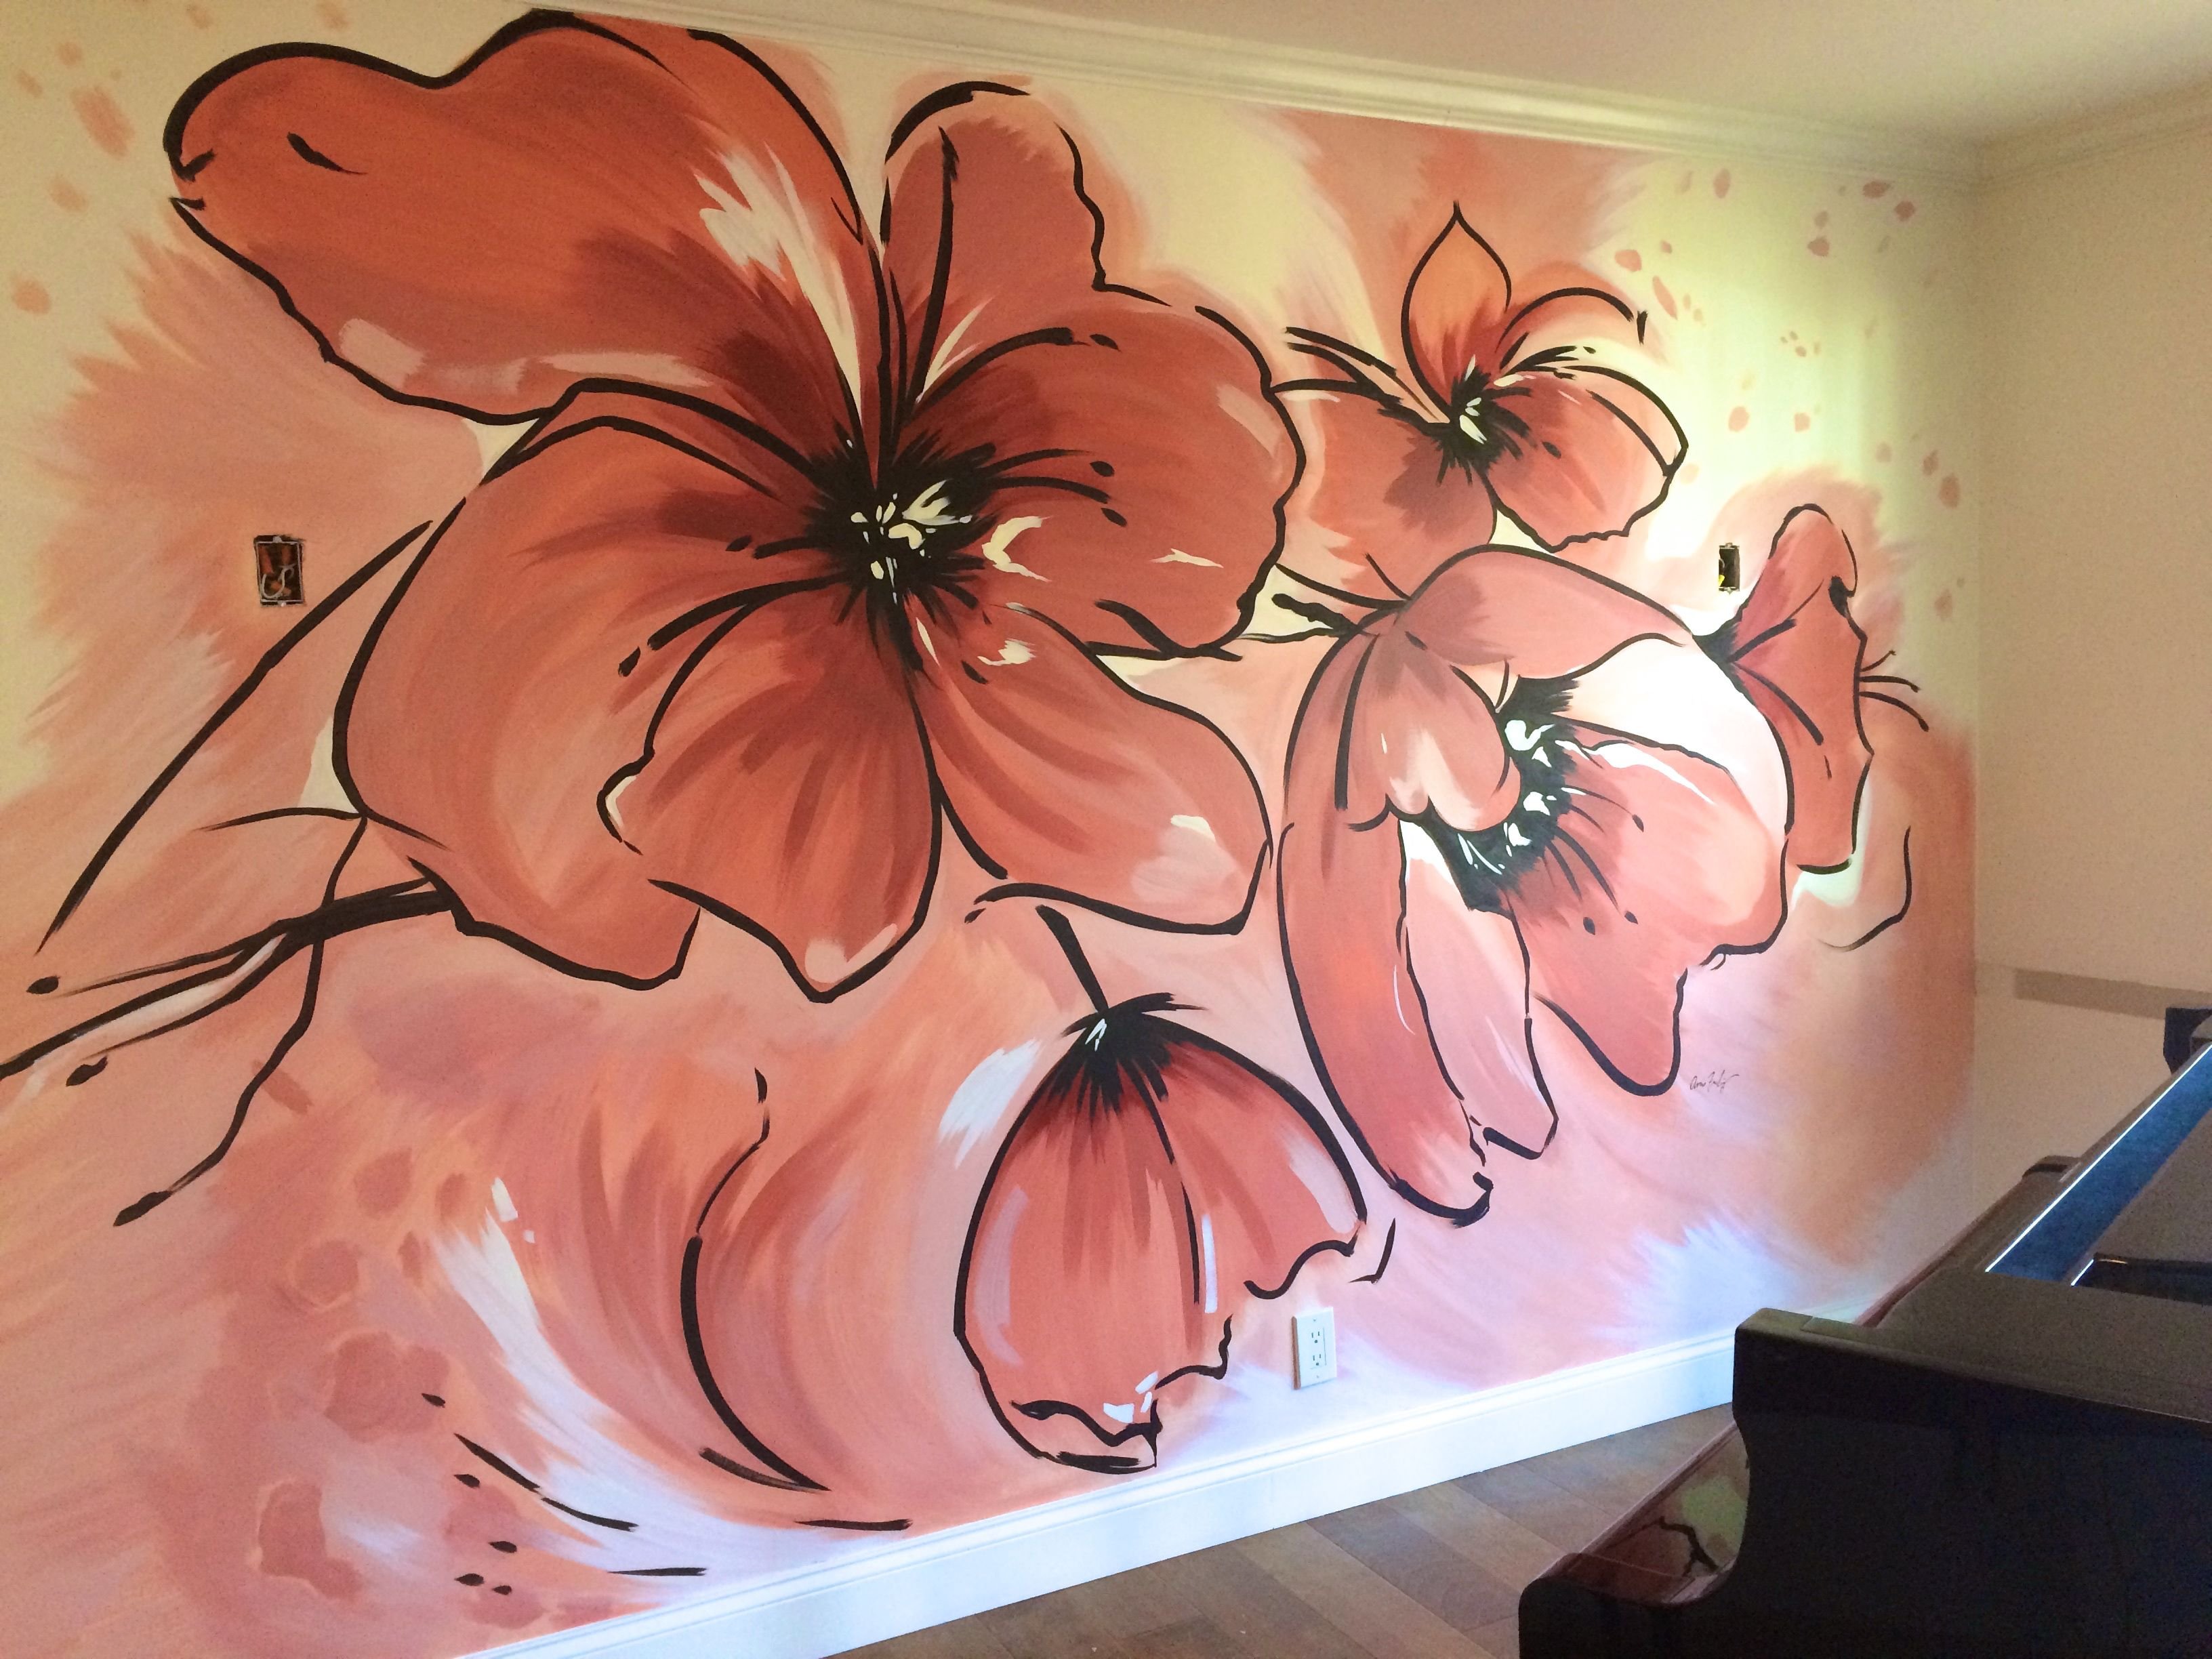 Рисование цветов на стене